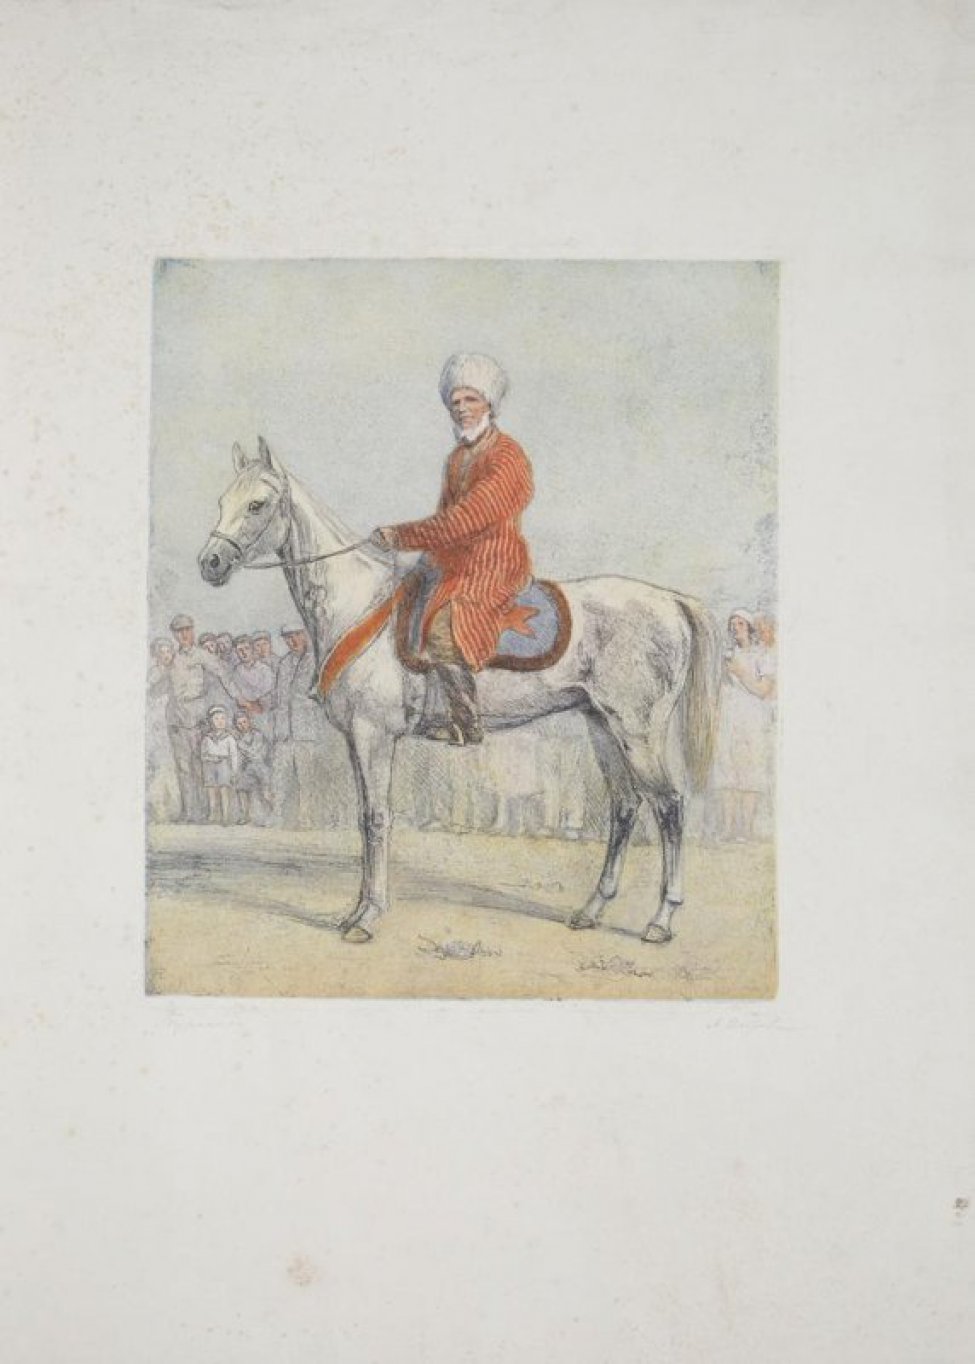 Изображен туркмен в полосатом халате и с папахой на голове, сидящий верхом на лошади перед толпой народа.